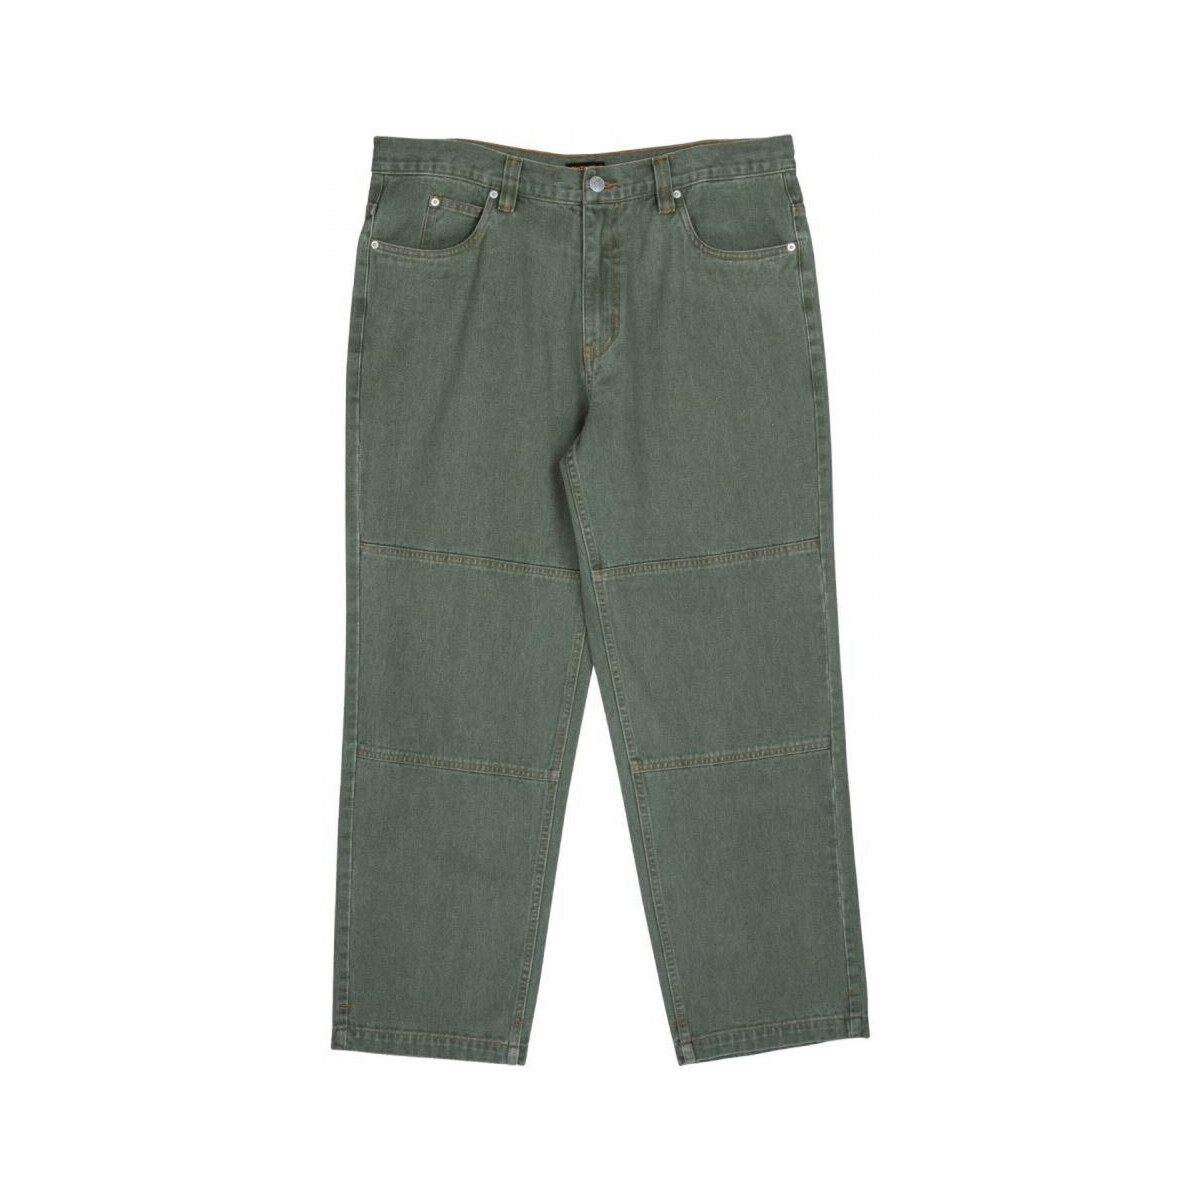 Textiel Heren Broeken / Pantalons Santa Cruz Classic label panel jean Groen